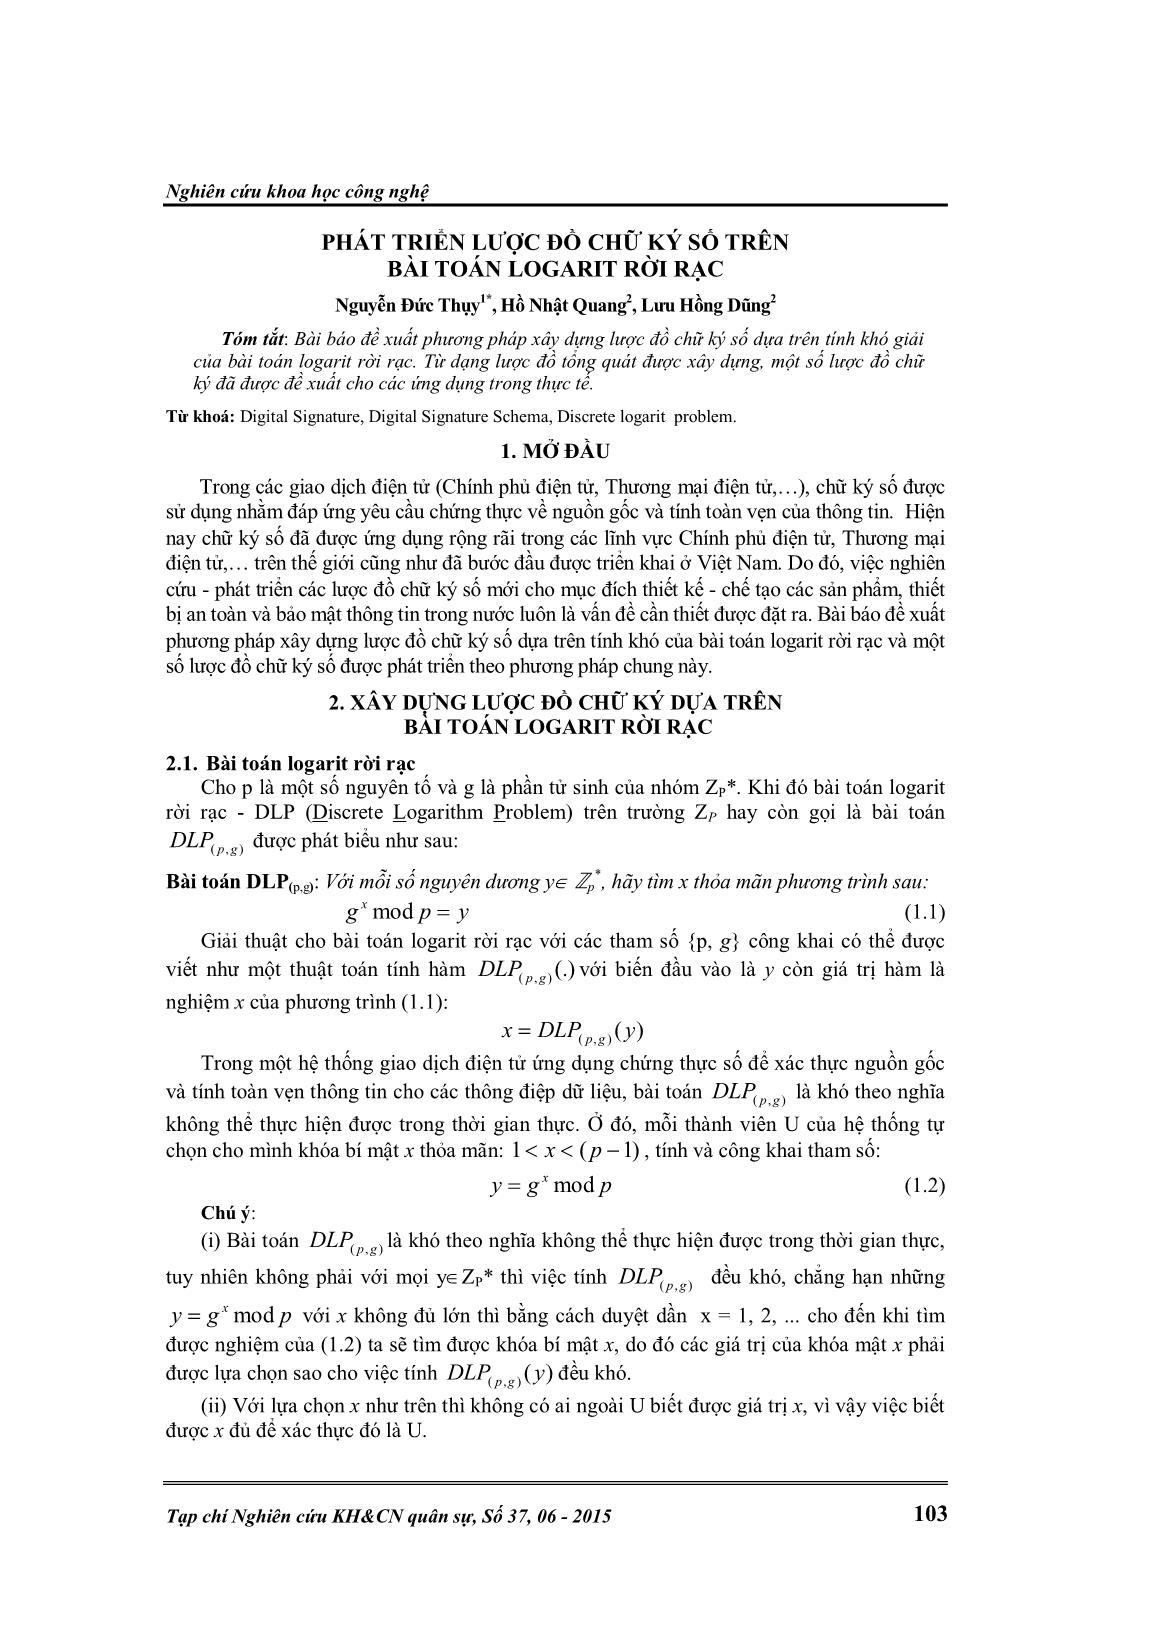 Phát triển lược đồ chữ ký số trên bài toán Logarit rời rạc trang 1